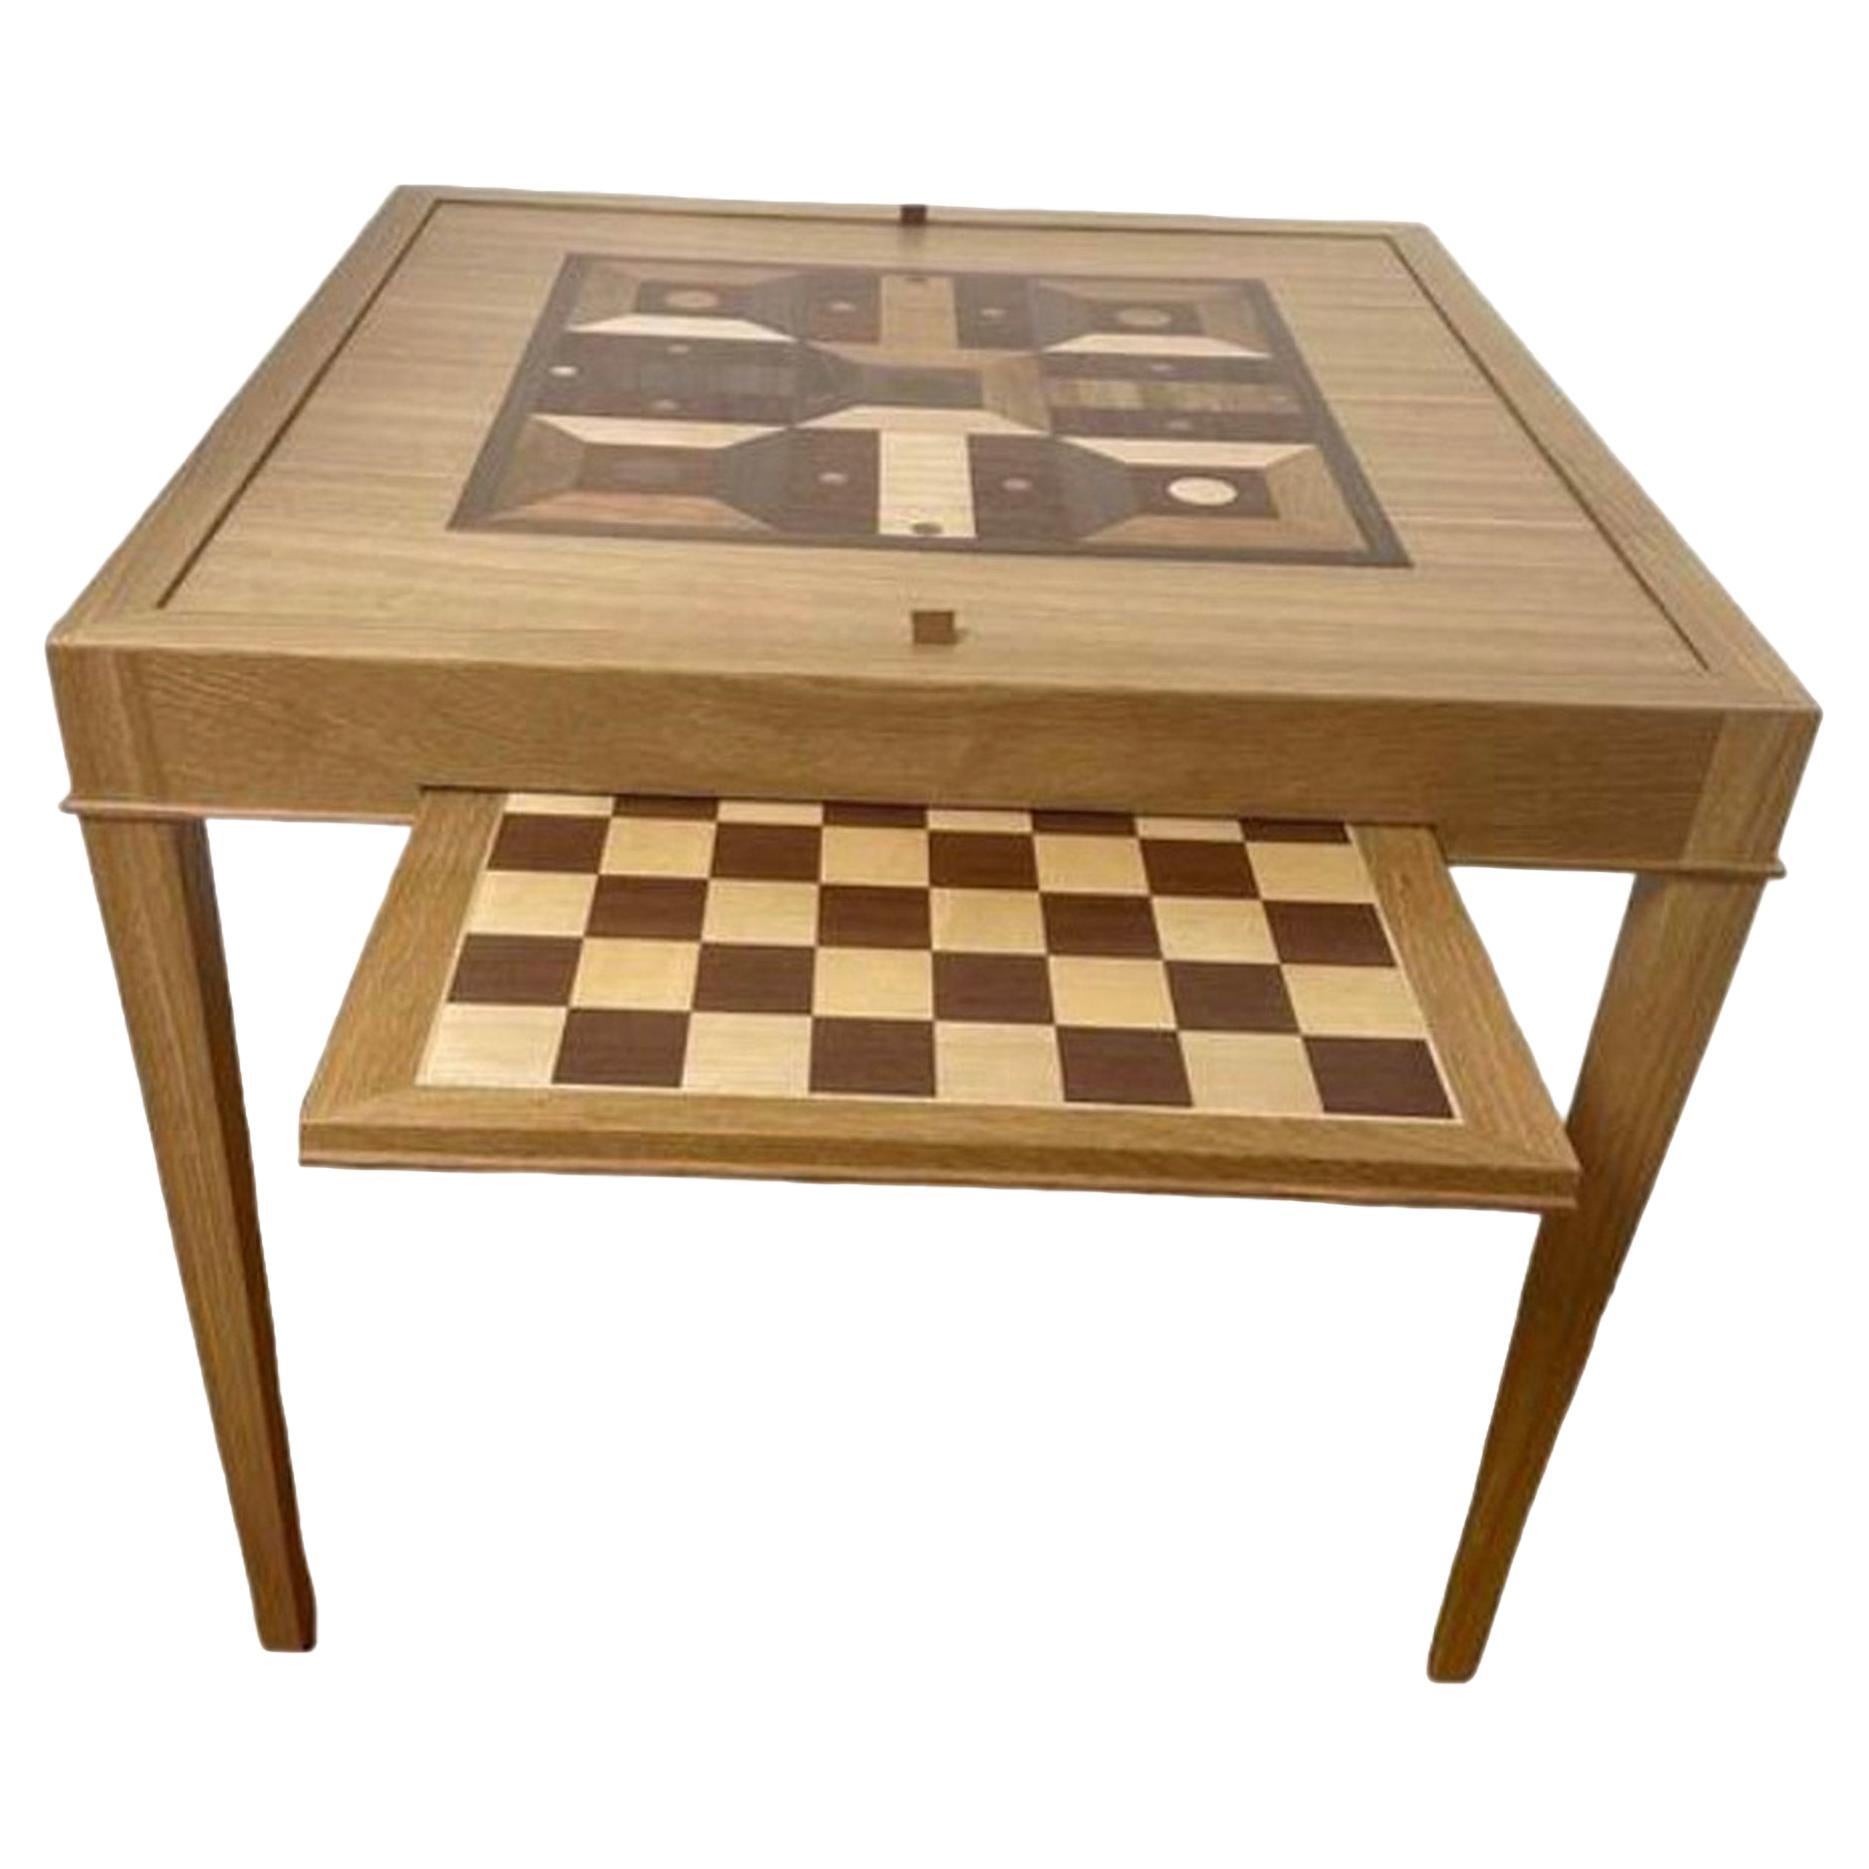 Quadratischer Spieltisch mit Parchessi-Karton